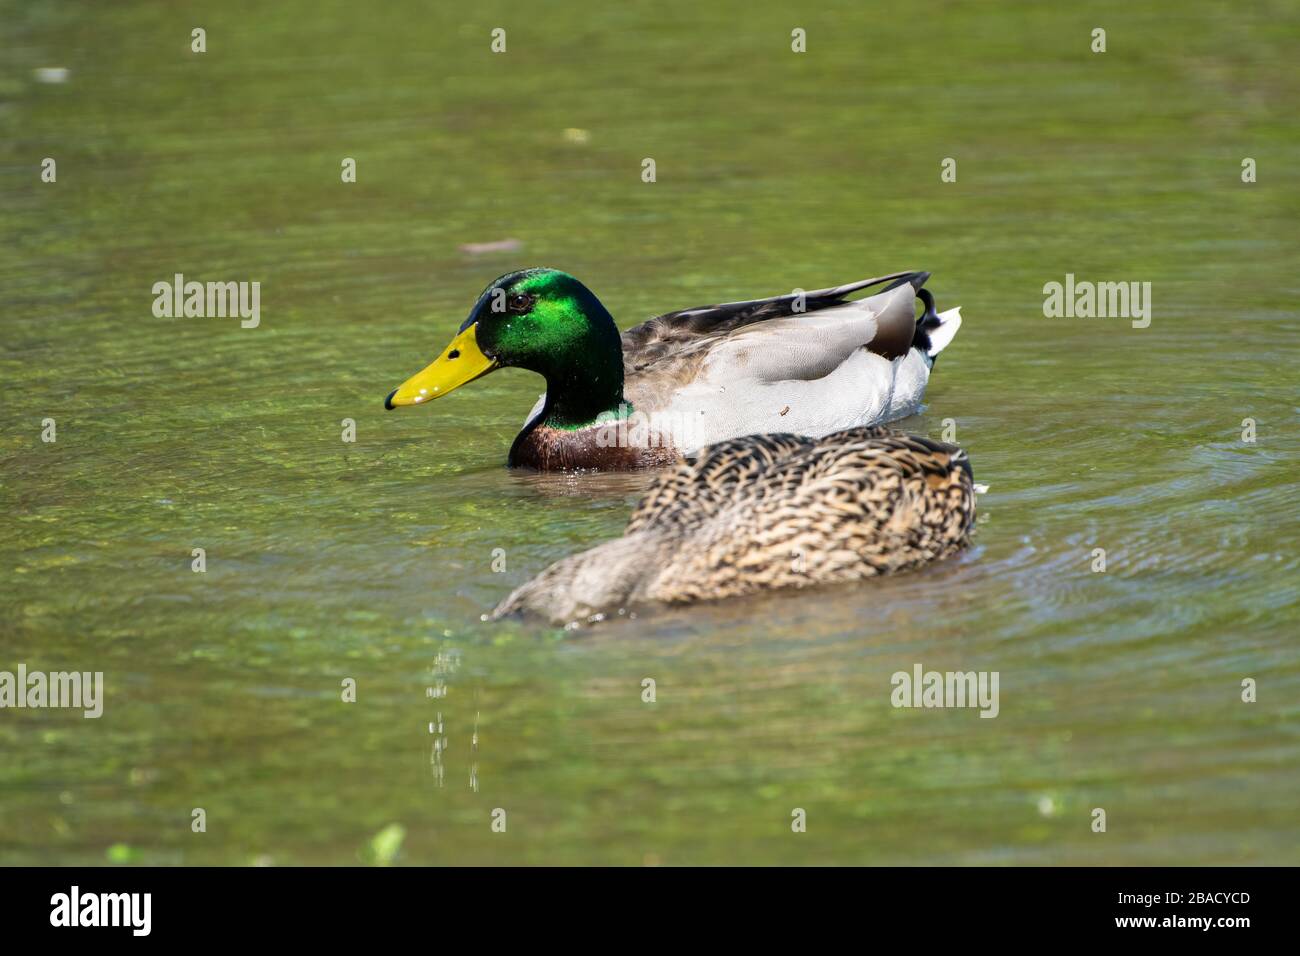 Primo piano di una femmina Mallard Duck con la testa sommersa mentre si nutre mentre un maschio con bella, iridescente verde testa piume nuota nelle vicinanze. Foto Stock